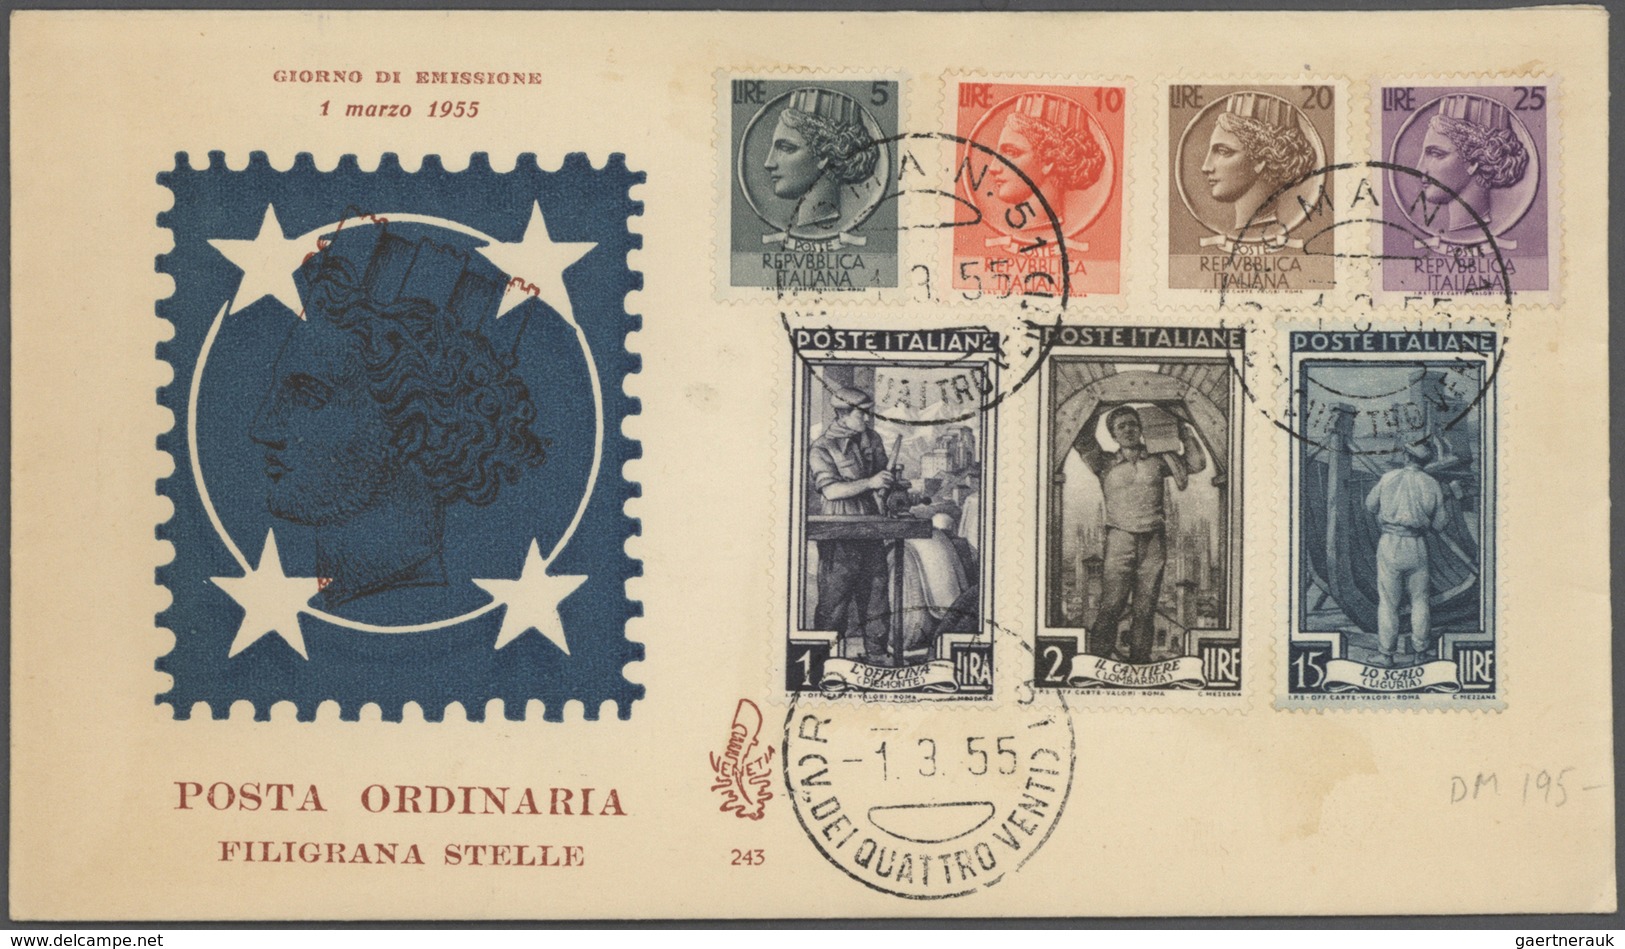 Br/GA Italien: 1858/1964, ca. 110 Briefe, Karten und Ganzsachen ab Altitalienische Staaten und inkl. San M